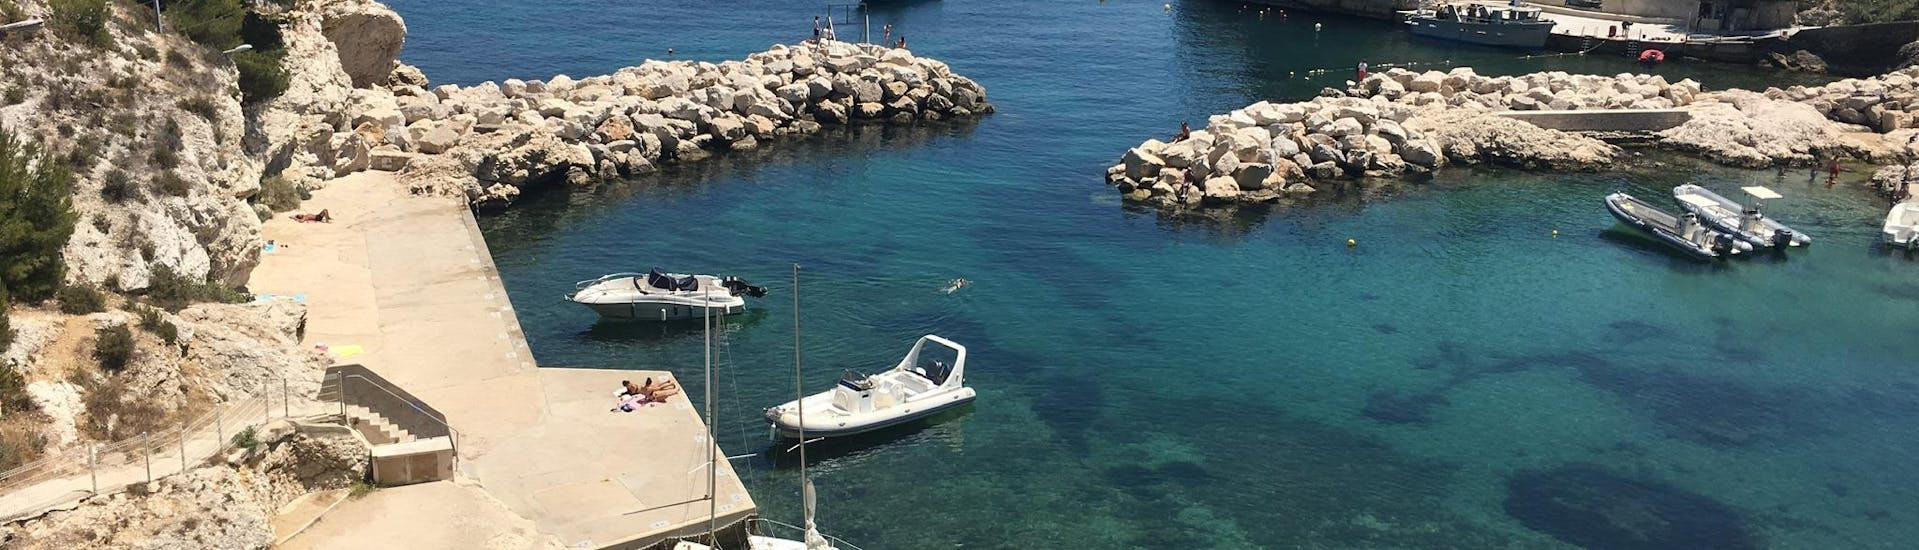  Petit port où le bateau de Balade en Mer attend ses clients à Marseille.  